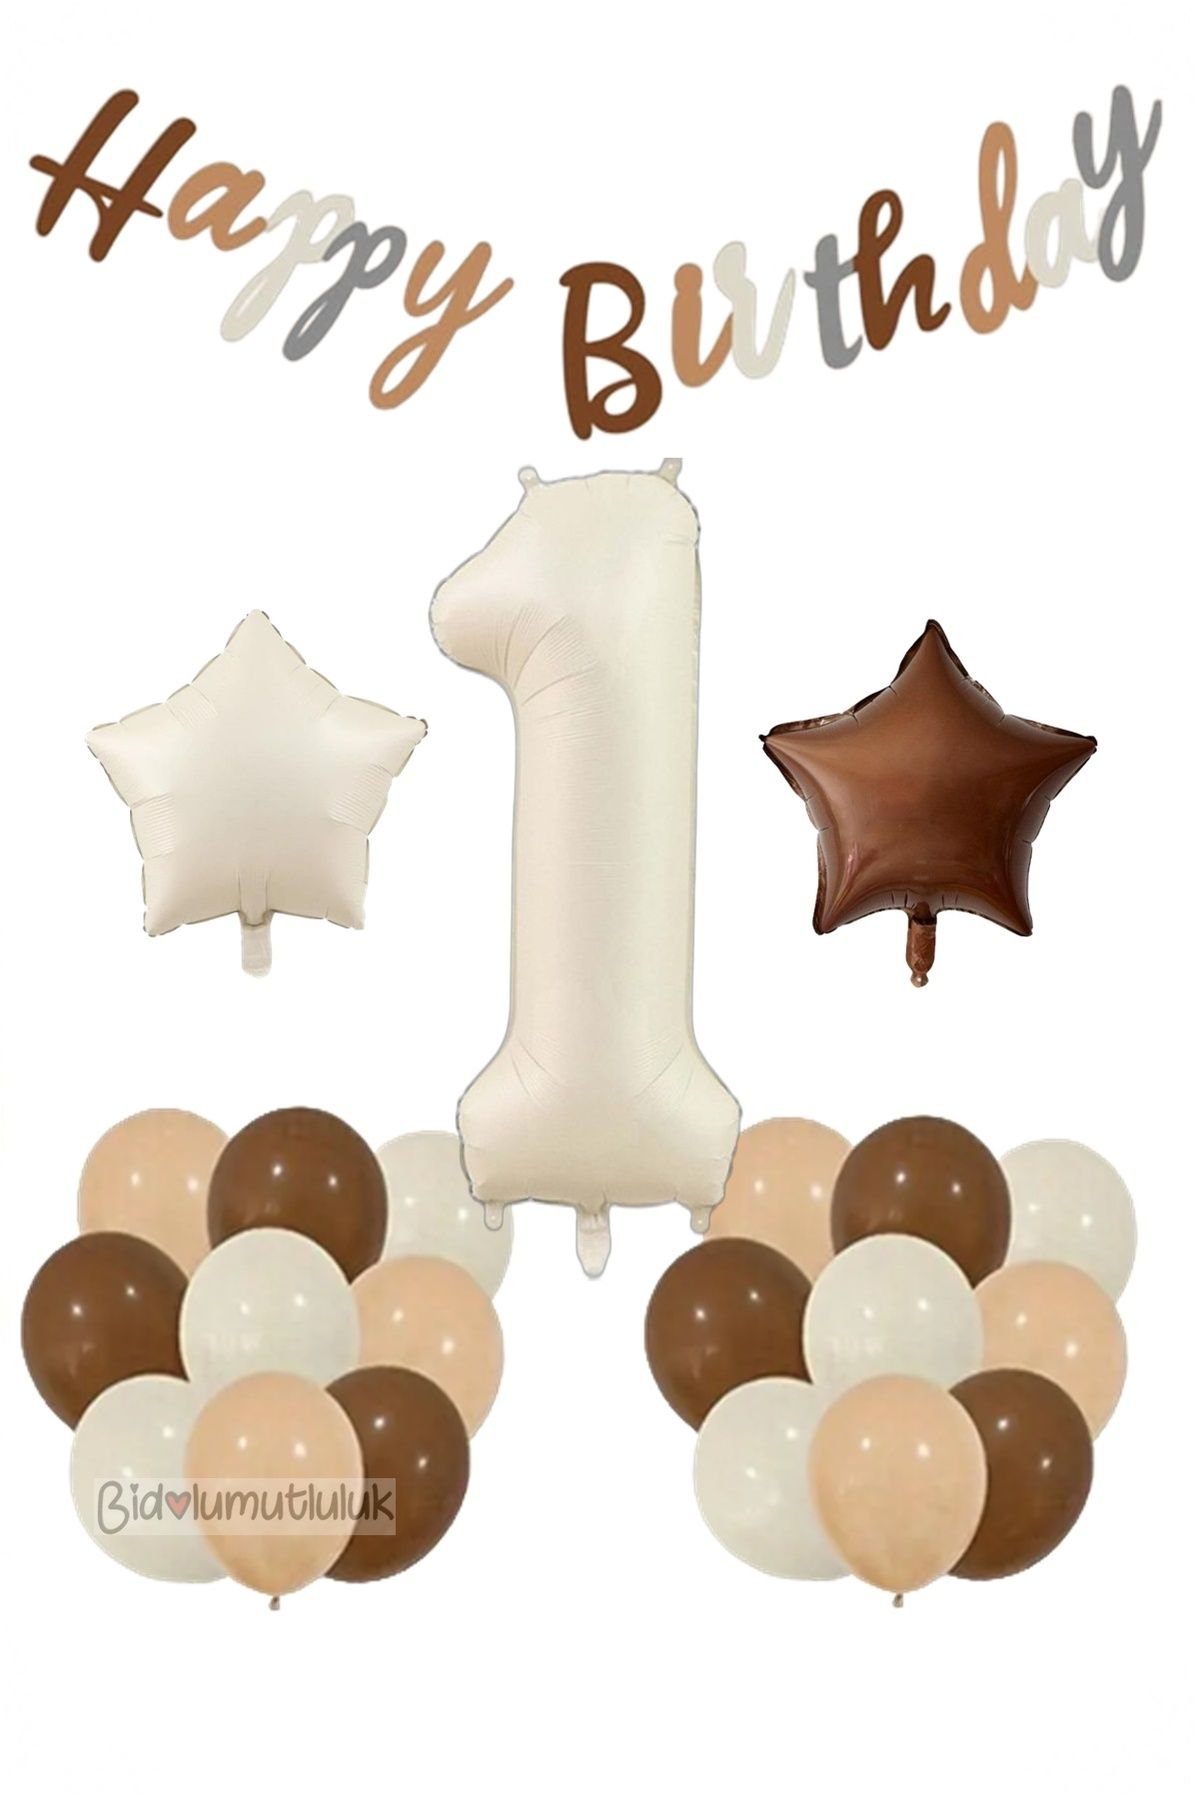 BİDOLUMUTLULUK Yaş Retro Doğum Günü Seti; Krem Rakam Folyo, Banner, Kalp Folyo ve Lateks Balon Doğum günü Eğlence